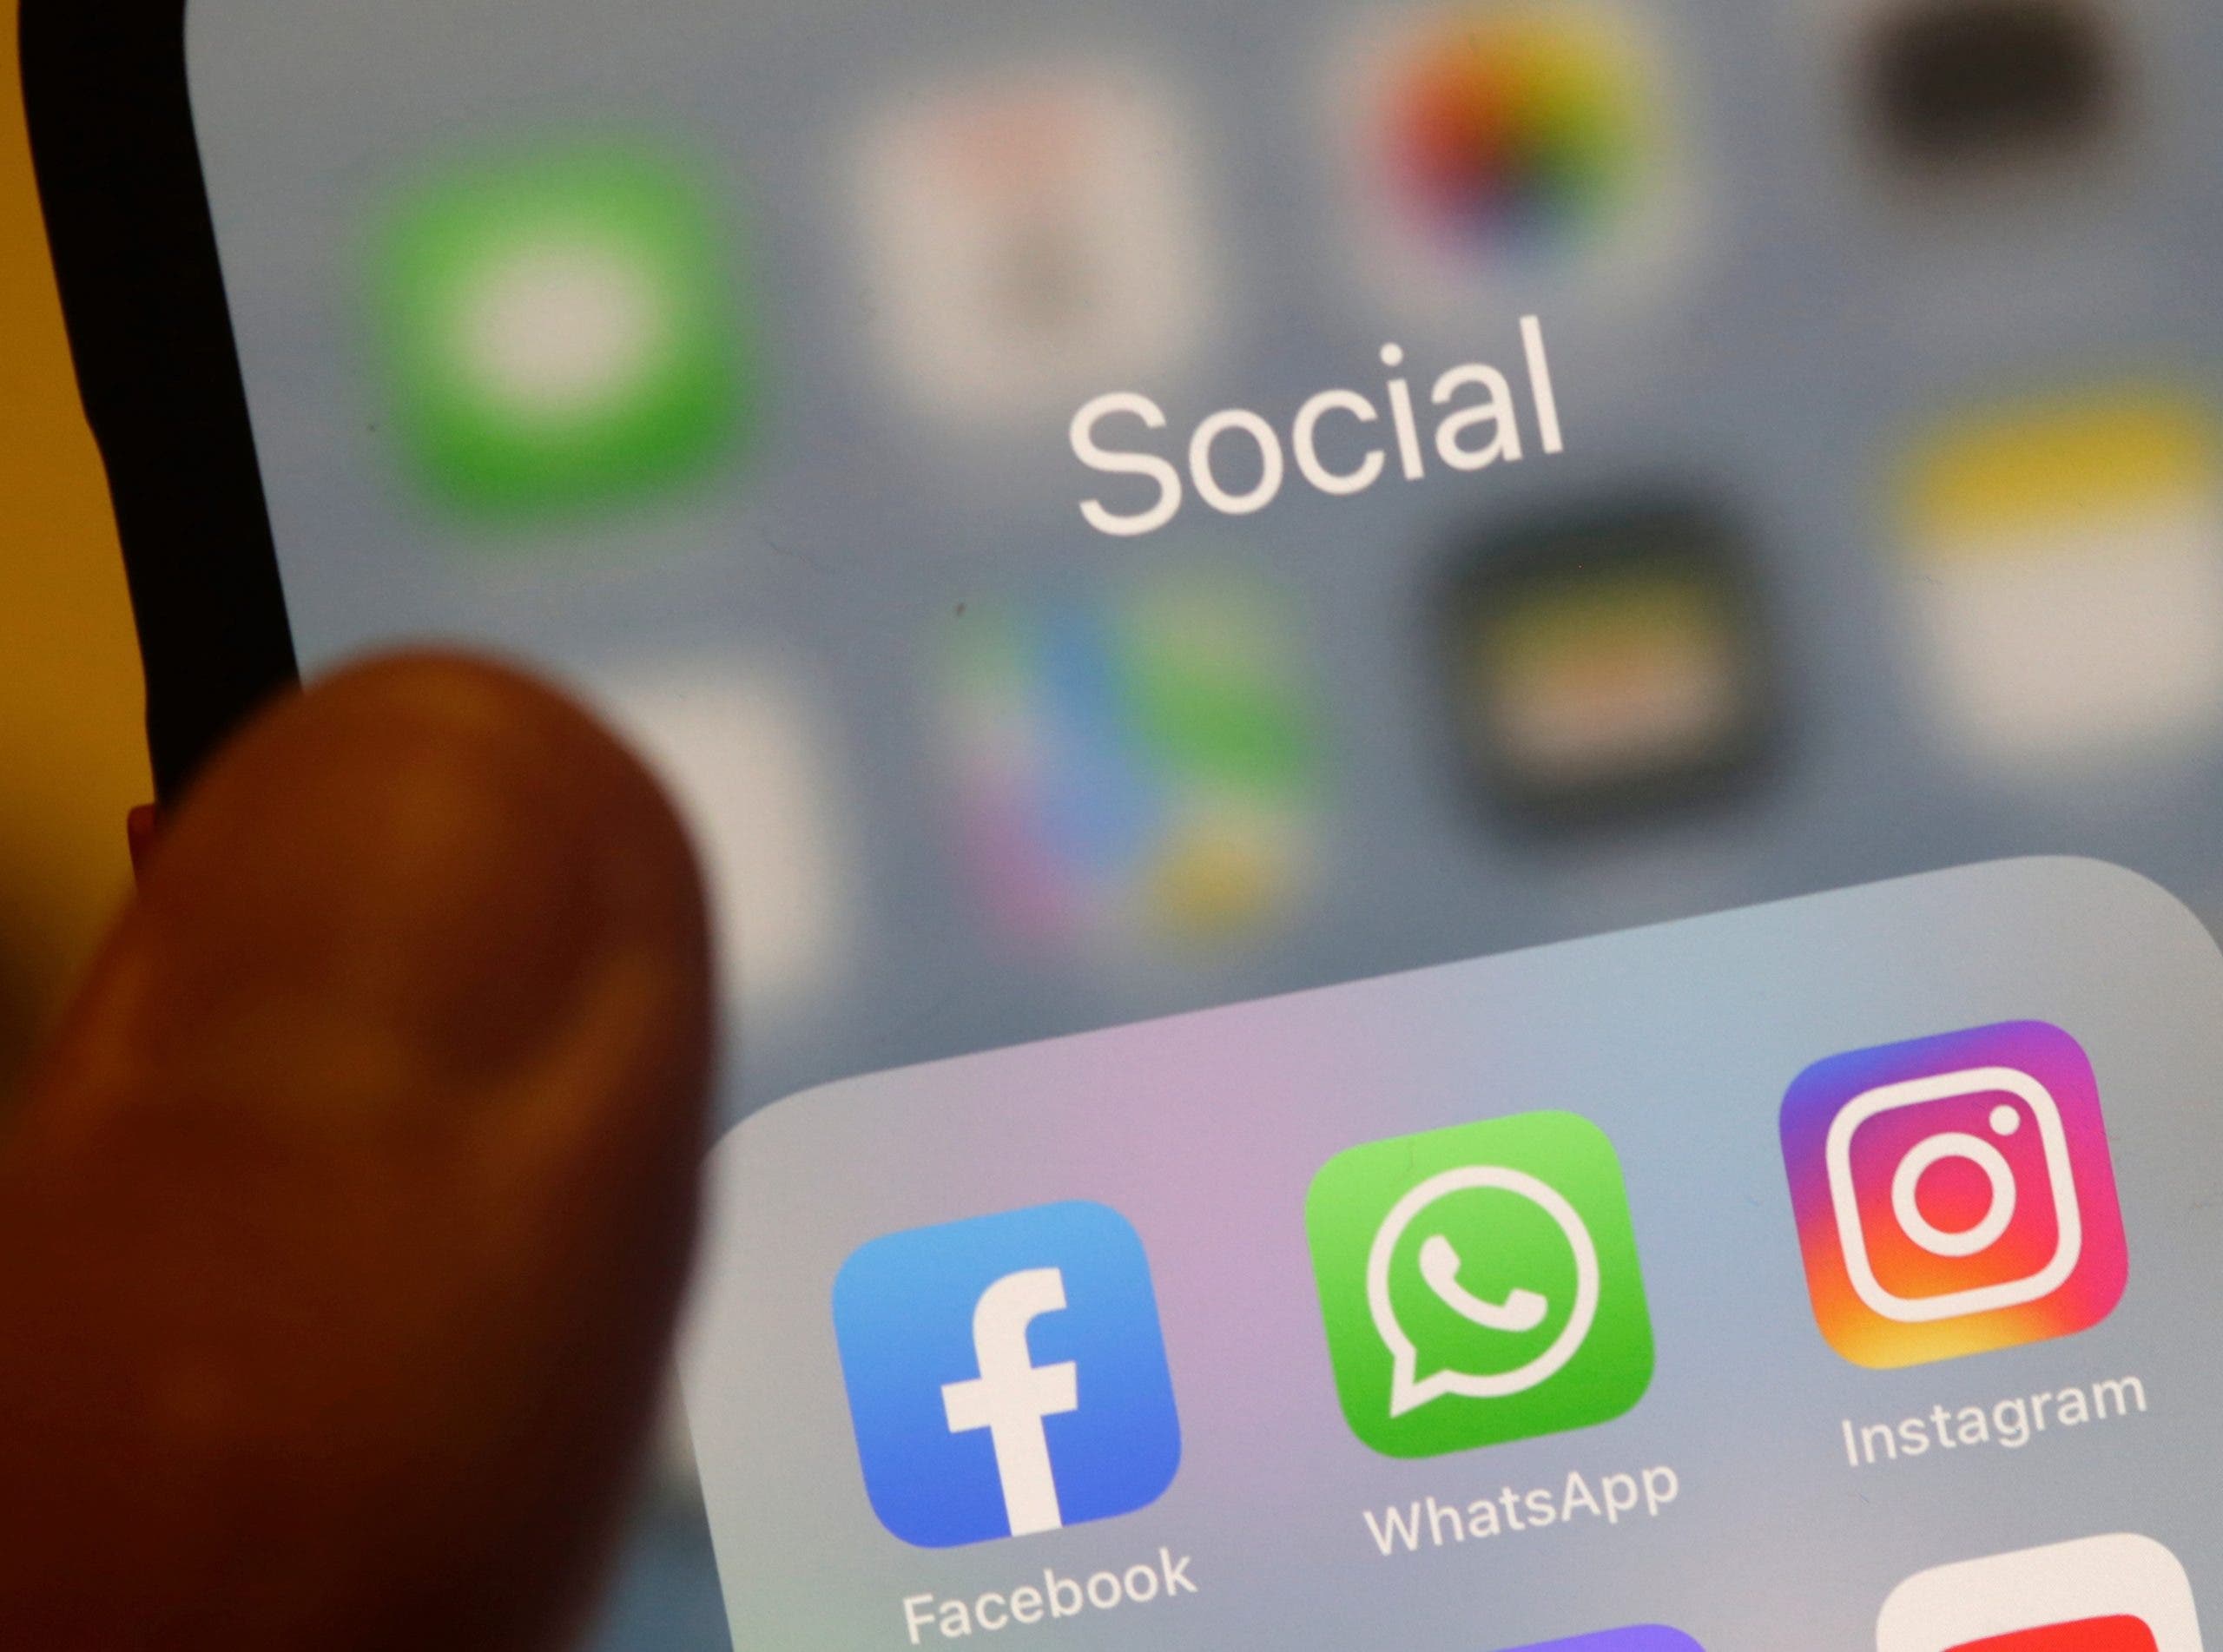 Apocalipsis Digital: nombre dado por usuarios a caída de Facebook, WhatsApp e Instagram